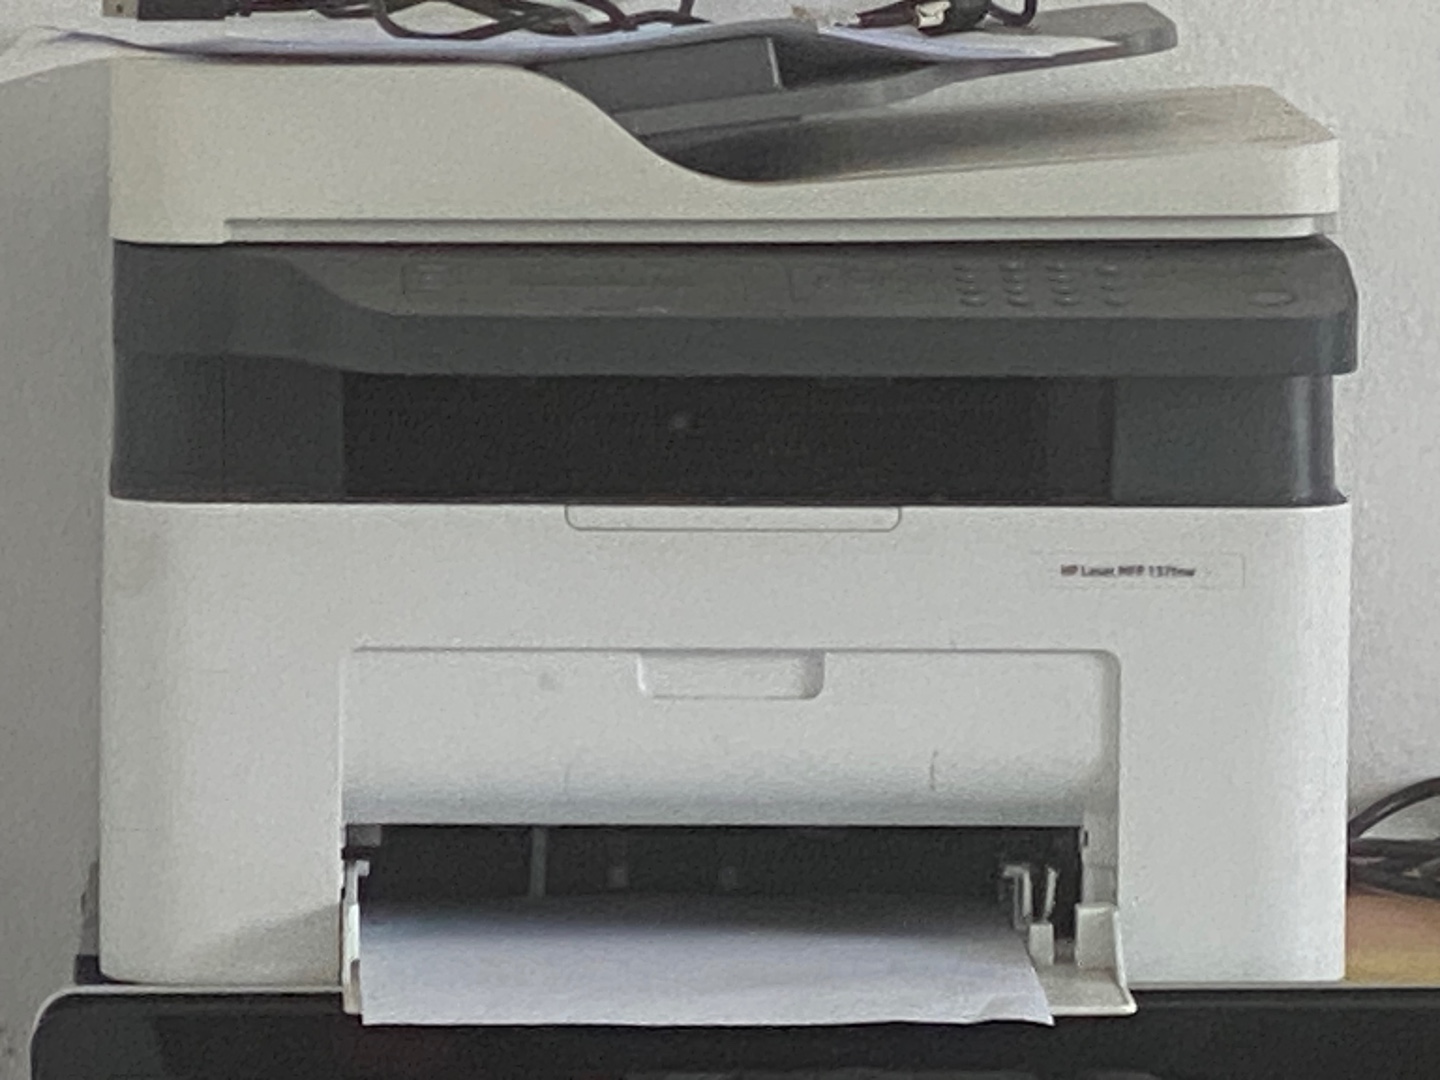 Impresora multifuncional HP - IMPRESORA LASERJET MFP M135W MULTIFUNCTION PRINTER 1